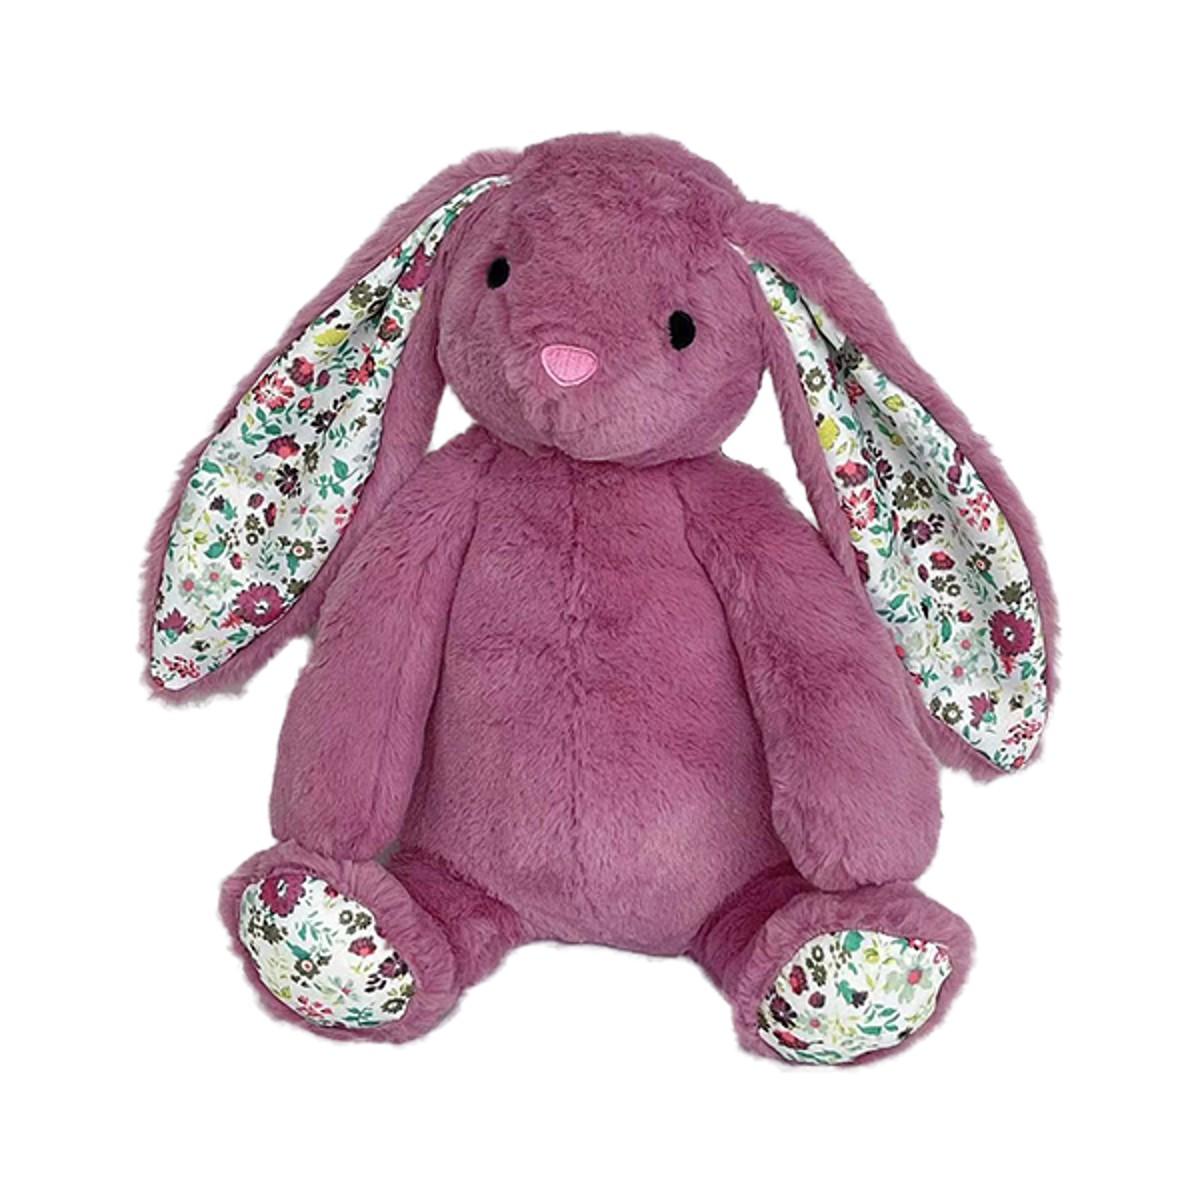 PetLou Spring Floral Rabbit Dog Toy - Lavender